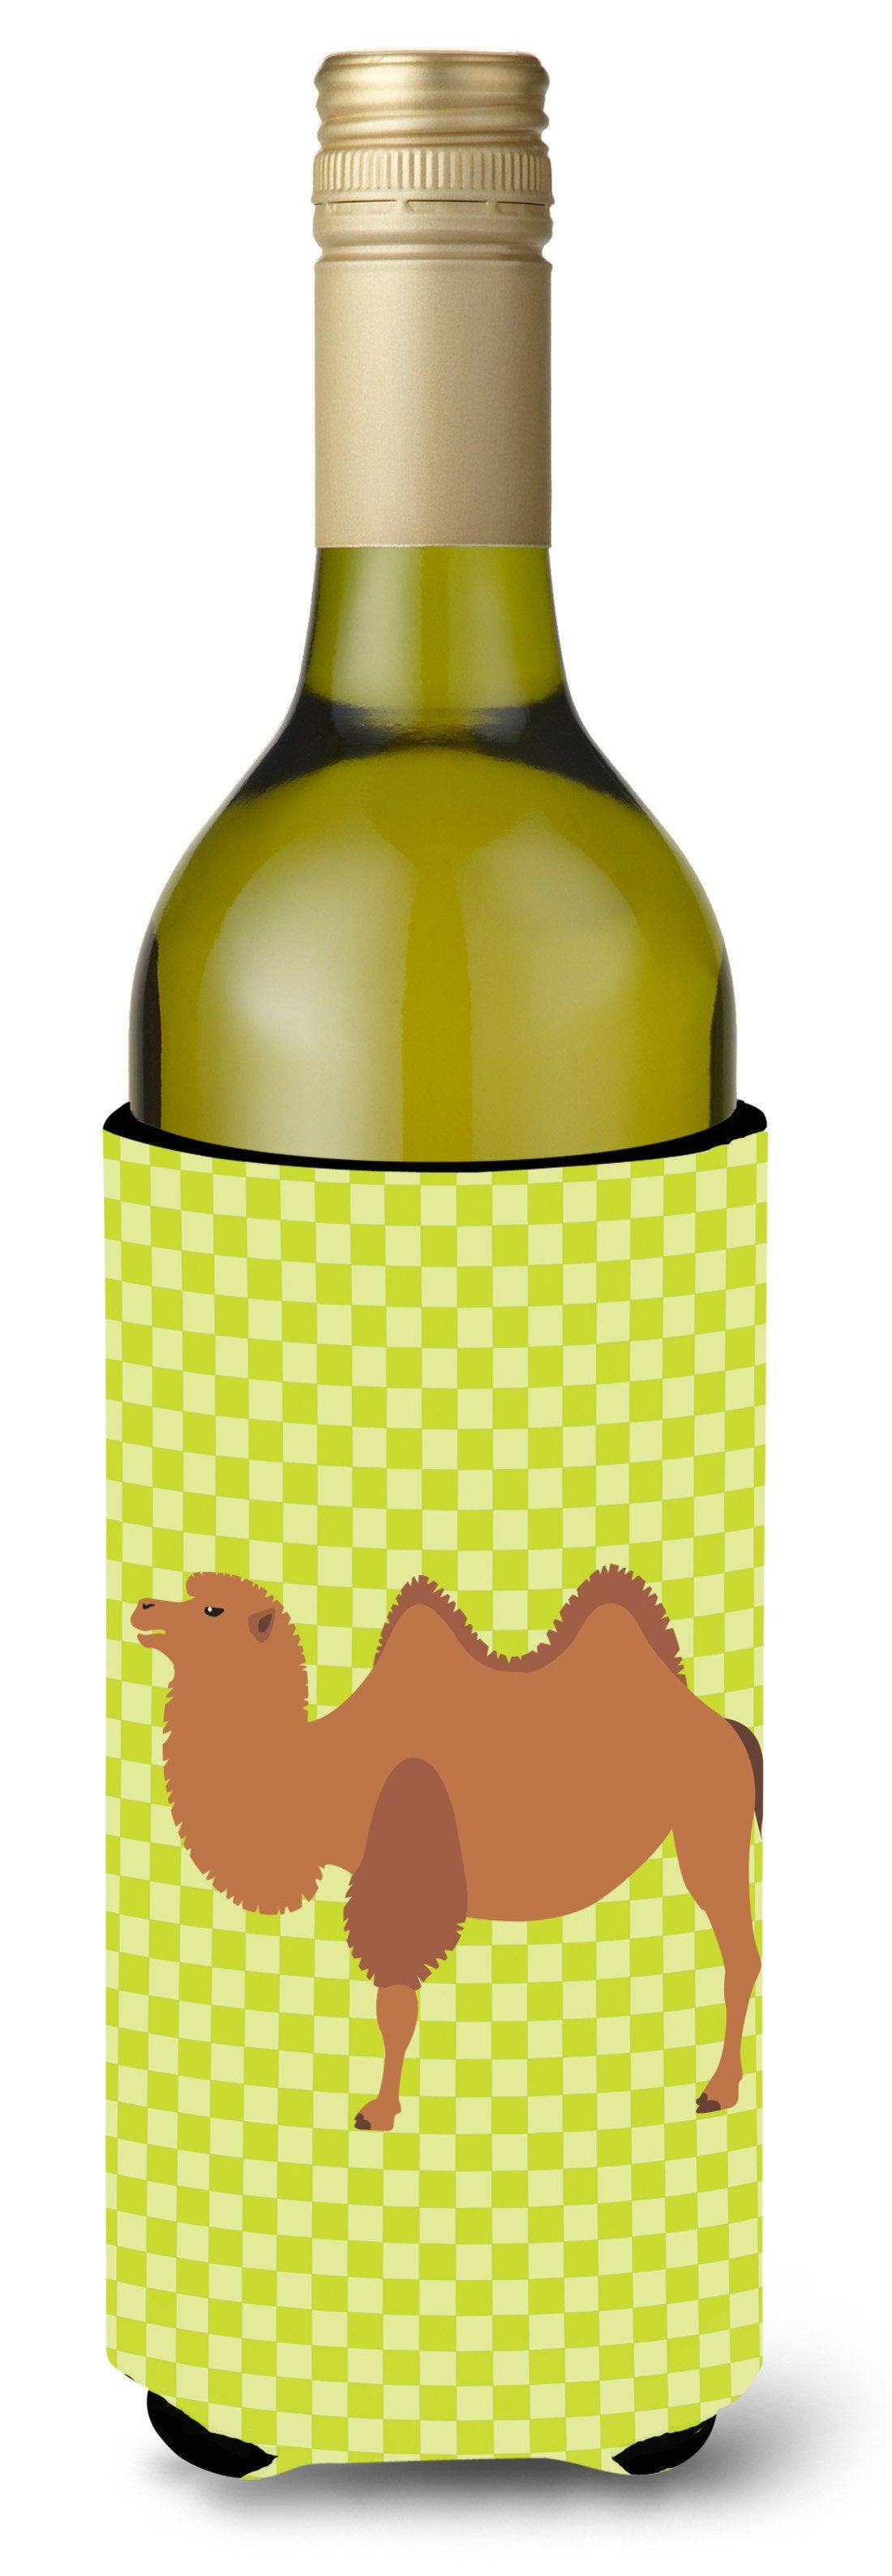 Bactrian Camel Green Wine Bottle Beverge Insulator Hugger BB7644LITERK by Caroline's Treasures